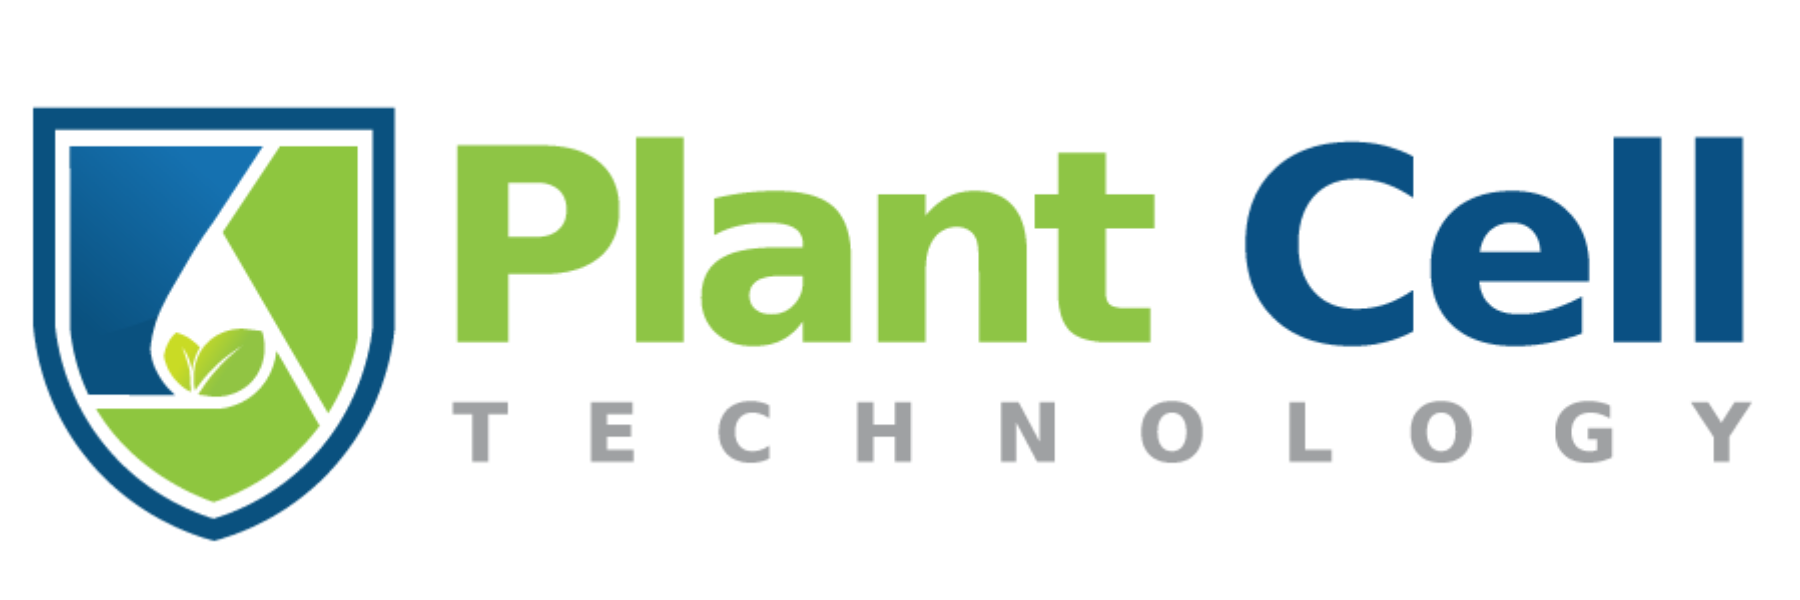 www.plantcelltechnology.com